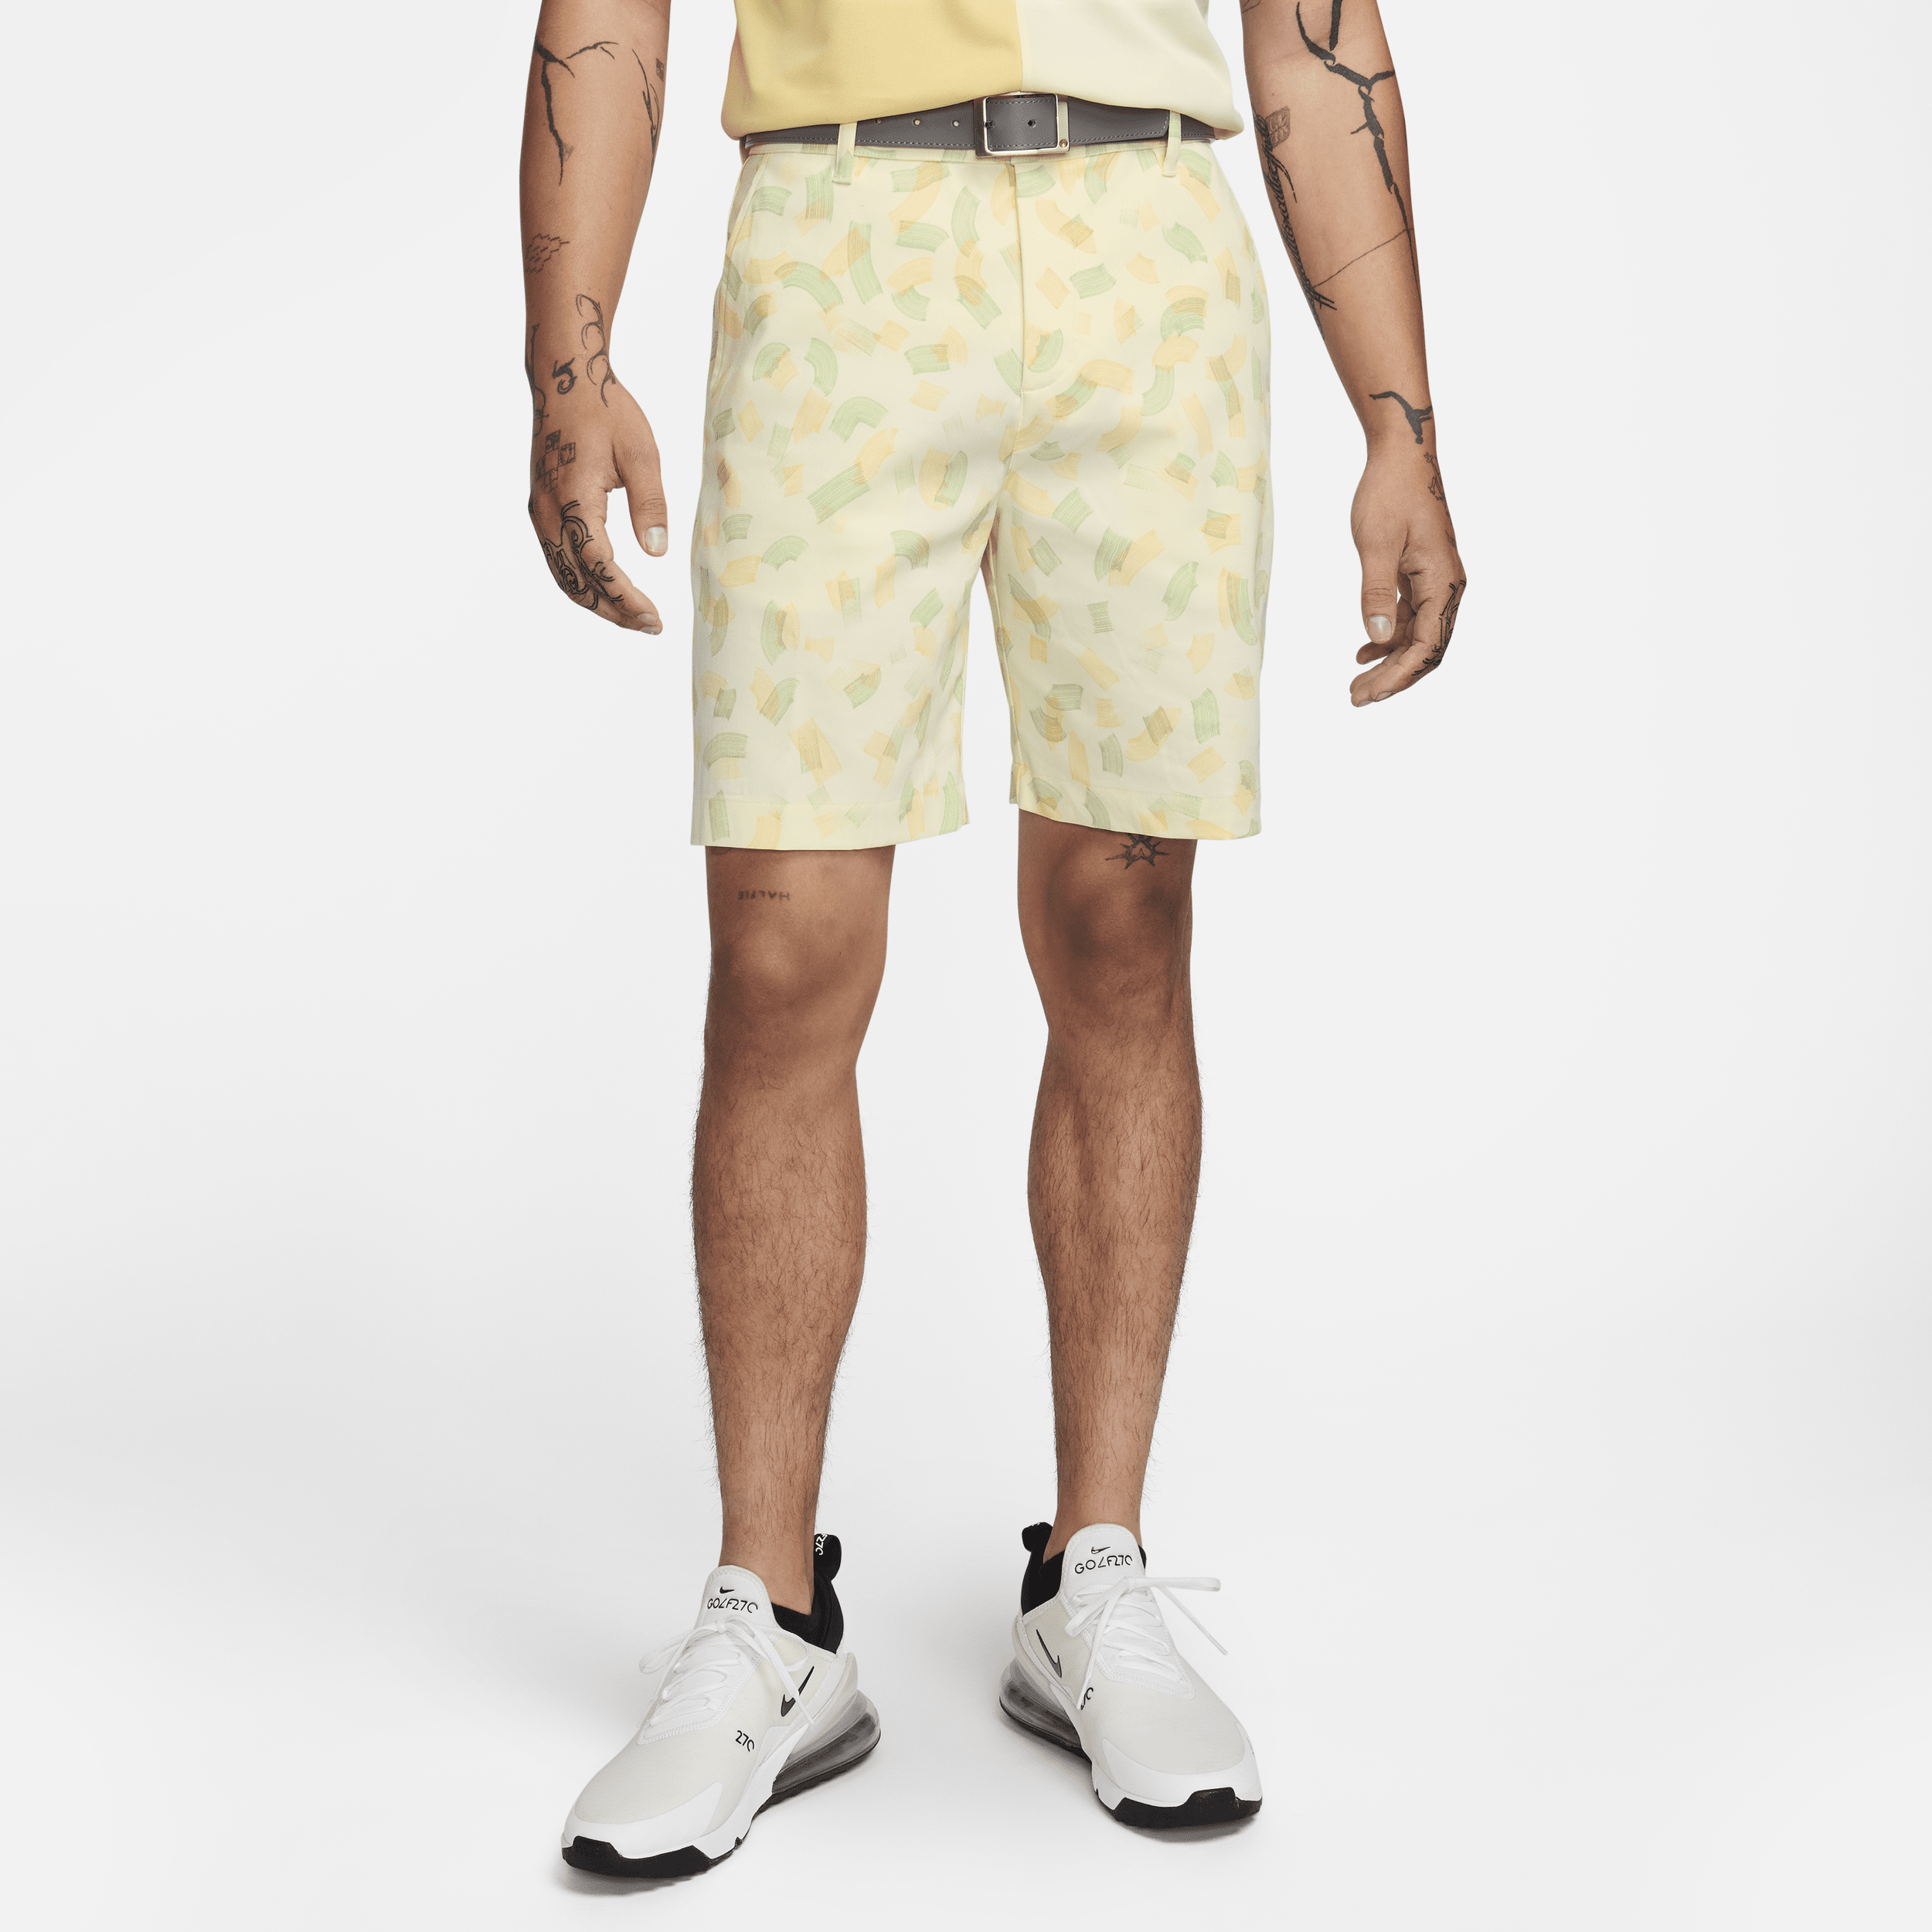 Shorts chino da golf 20 cm Nike Tour – Uomo - Bianco